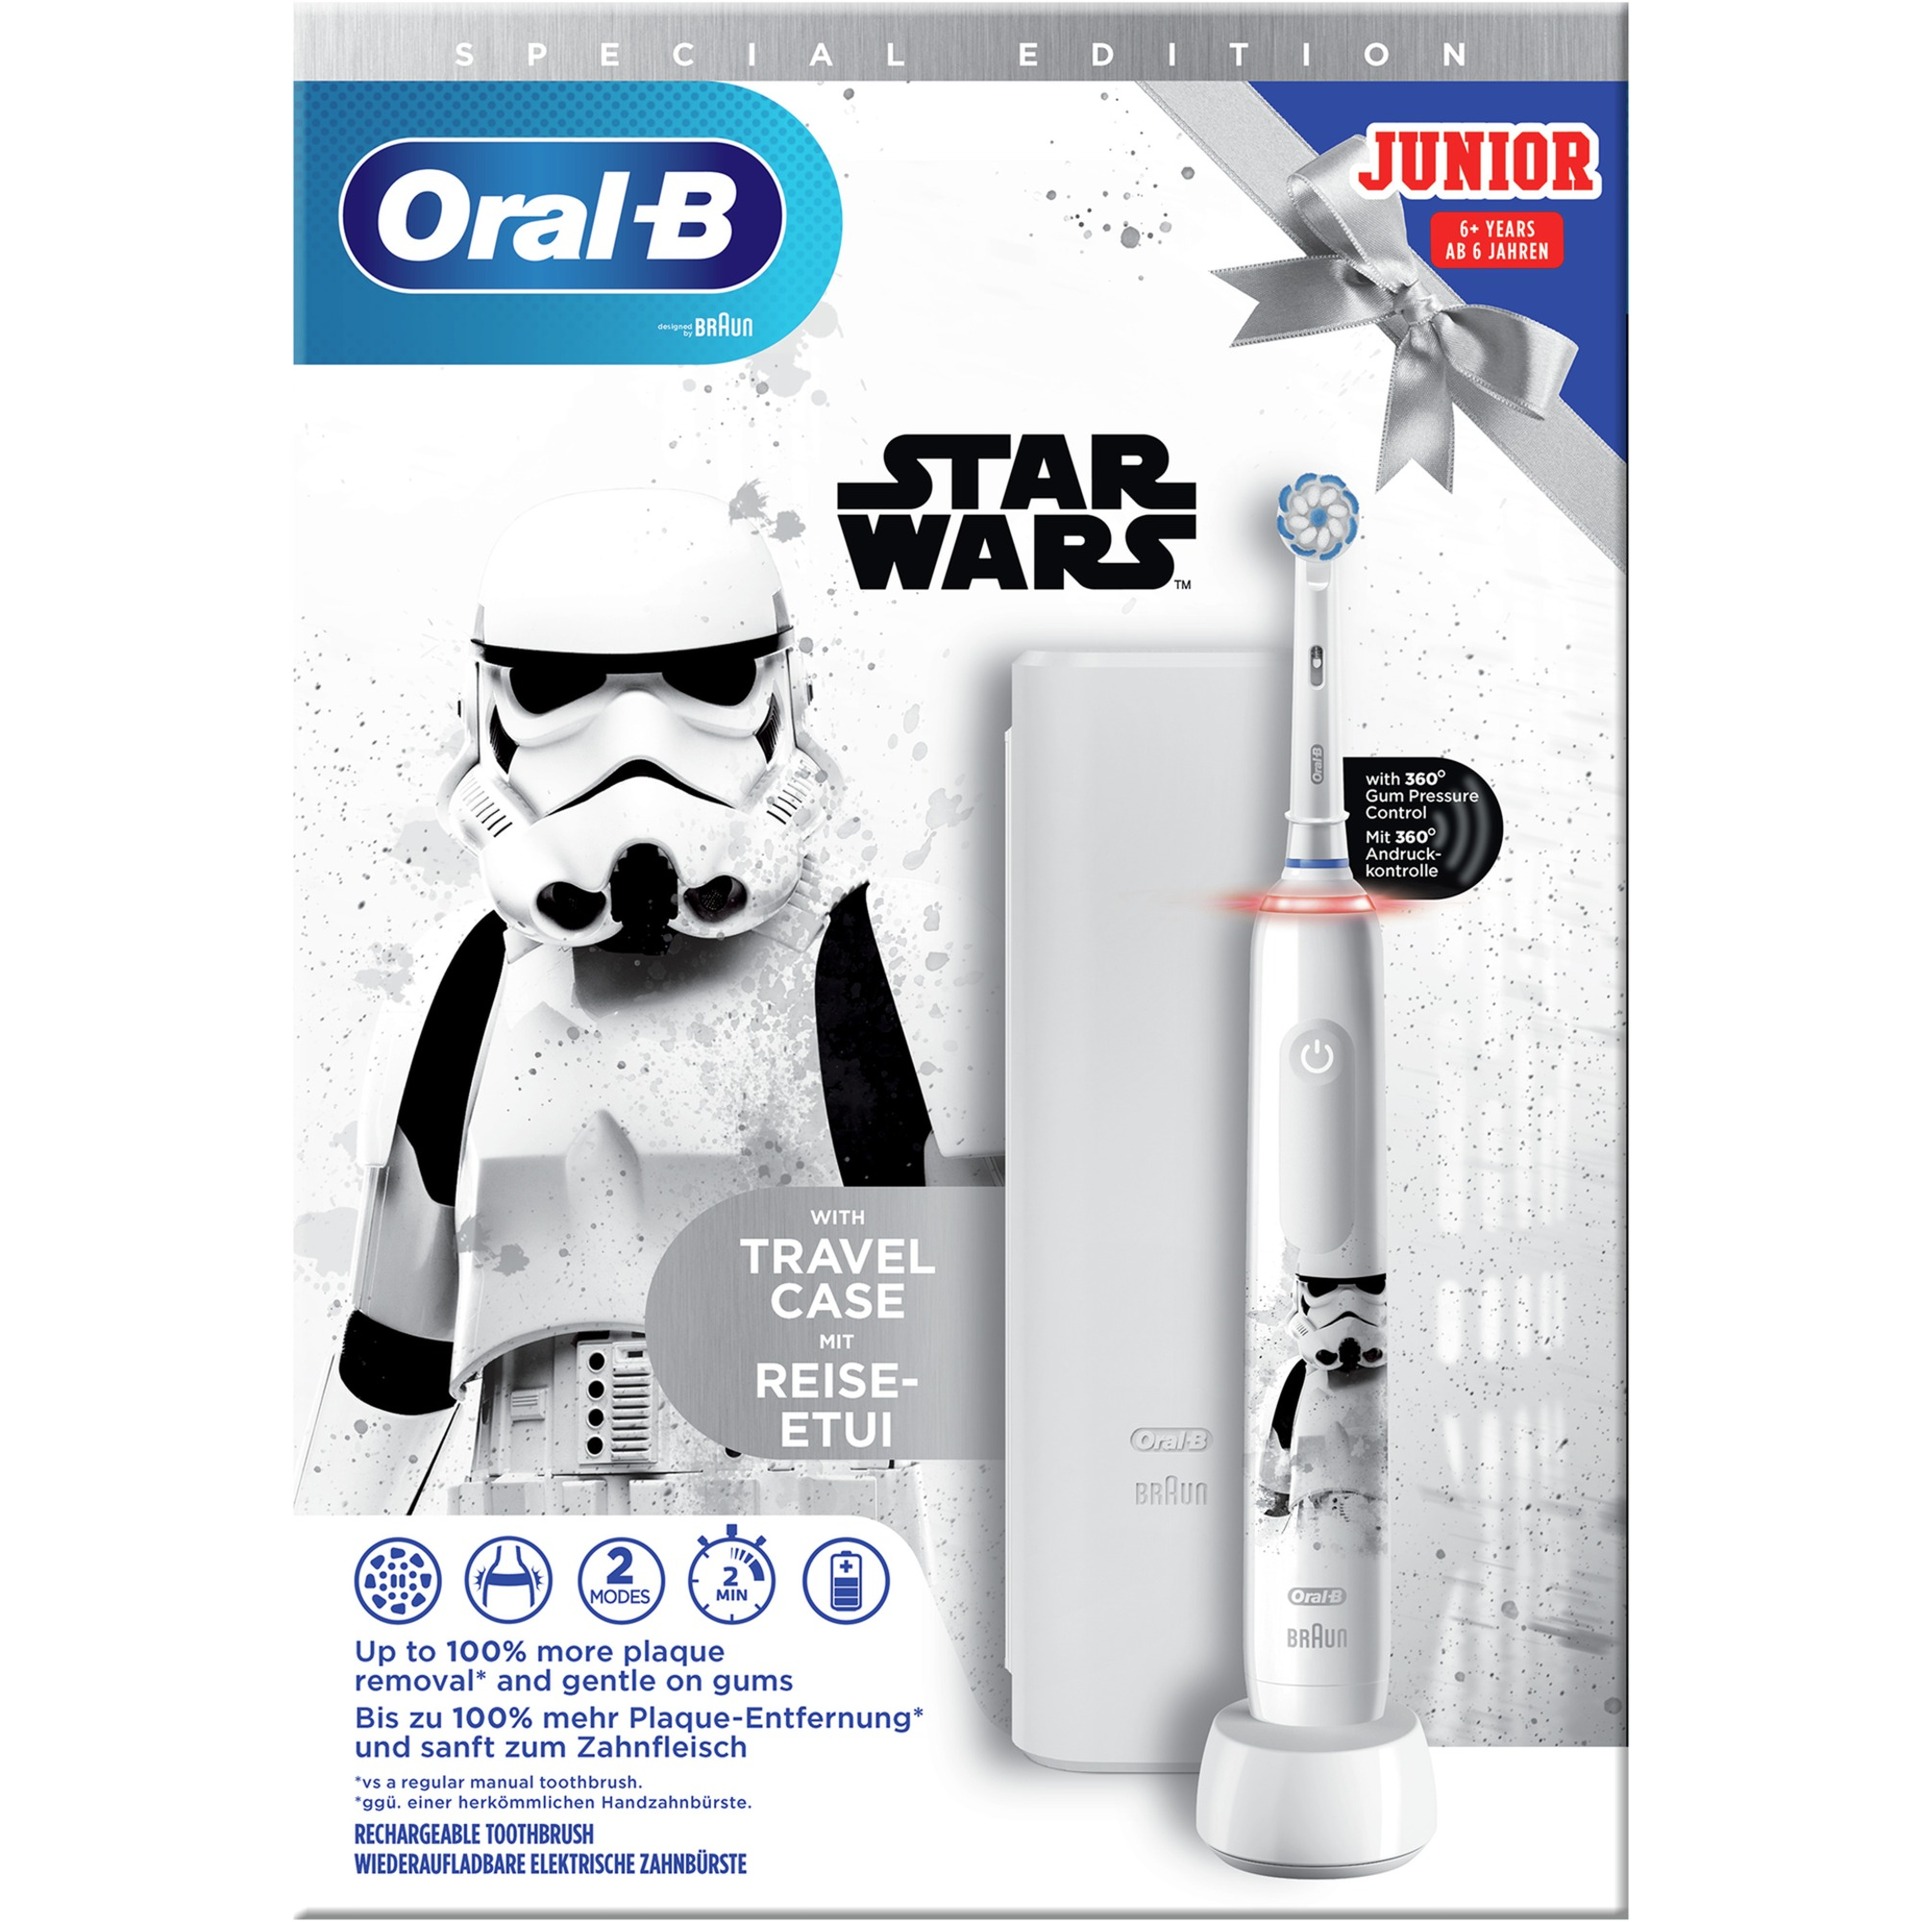 Image of Alternate - Oral-B Junior Star Wars Special Edition, Elektrische Zahnbürste online einkaufen bei Alternate